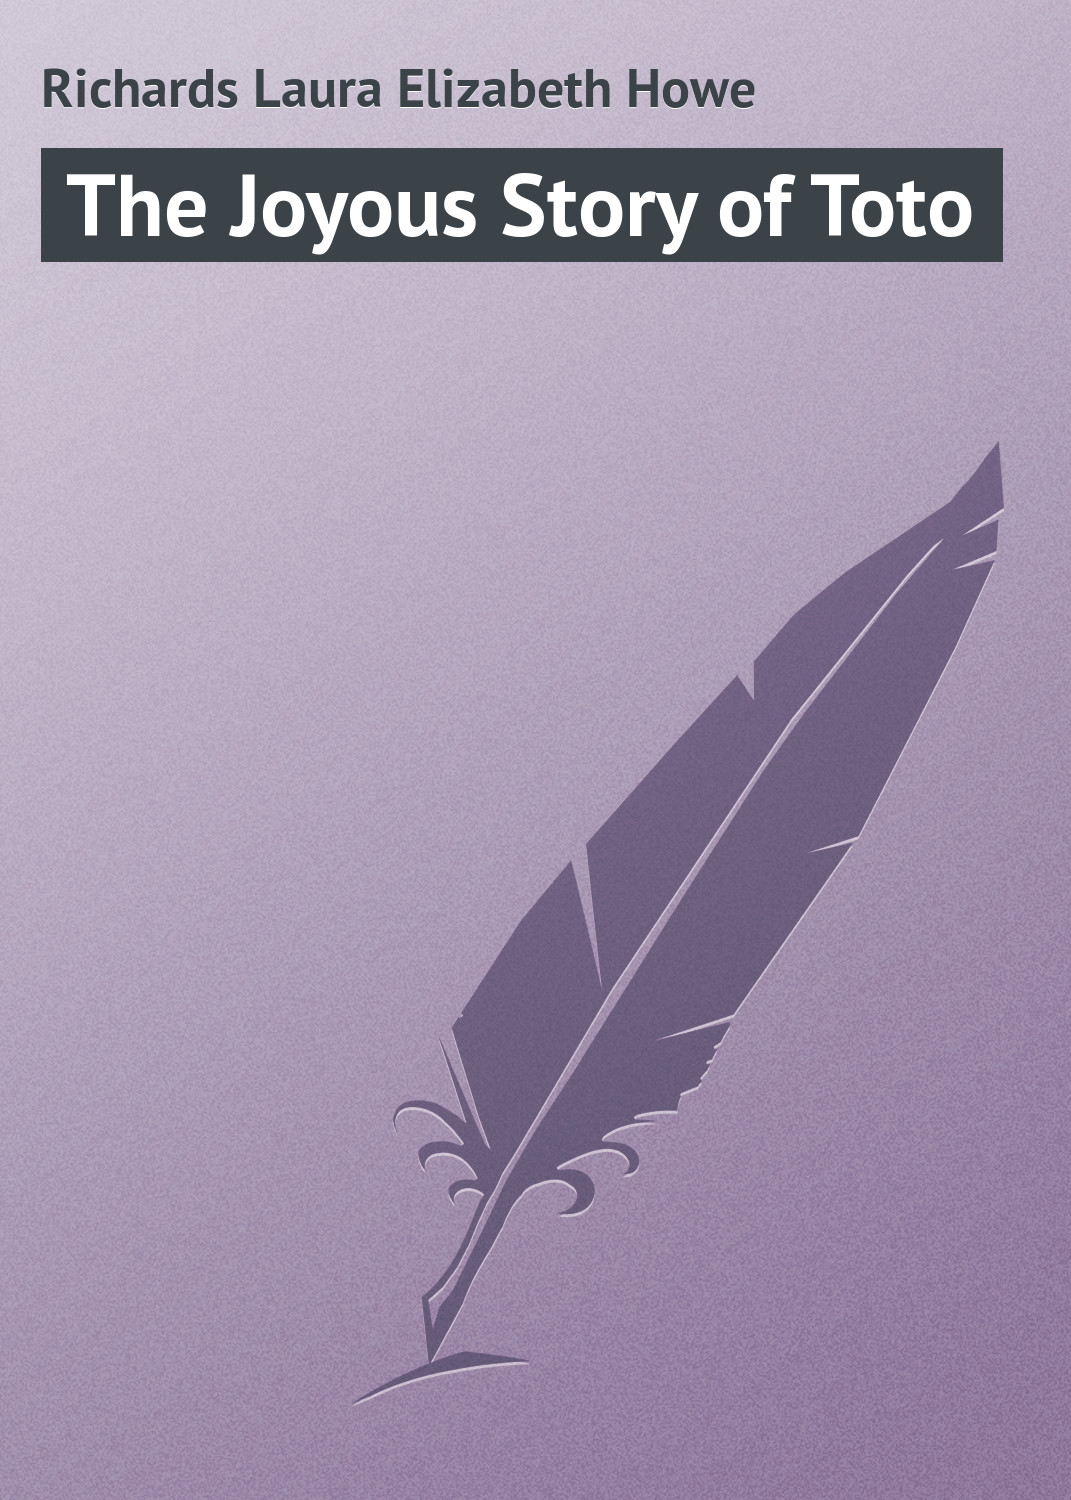 Книга The Joyous Story of Toto из серии , созданная Laura Richards, может относится к жанру Природа и животные, Зарубежная классика, Зарубежные детские книги. Стоимость книги The Joyous Story of Toto  с идентификатором 23151563 составляет 5.99 руб.